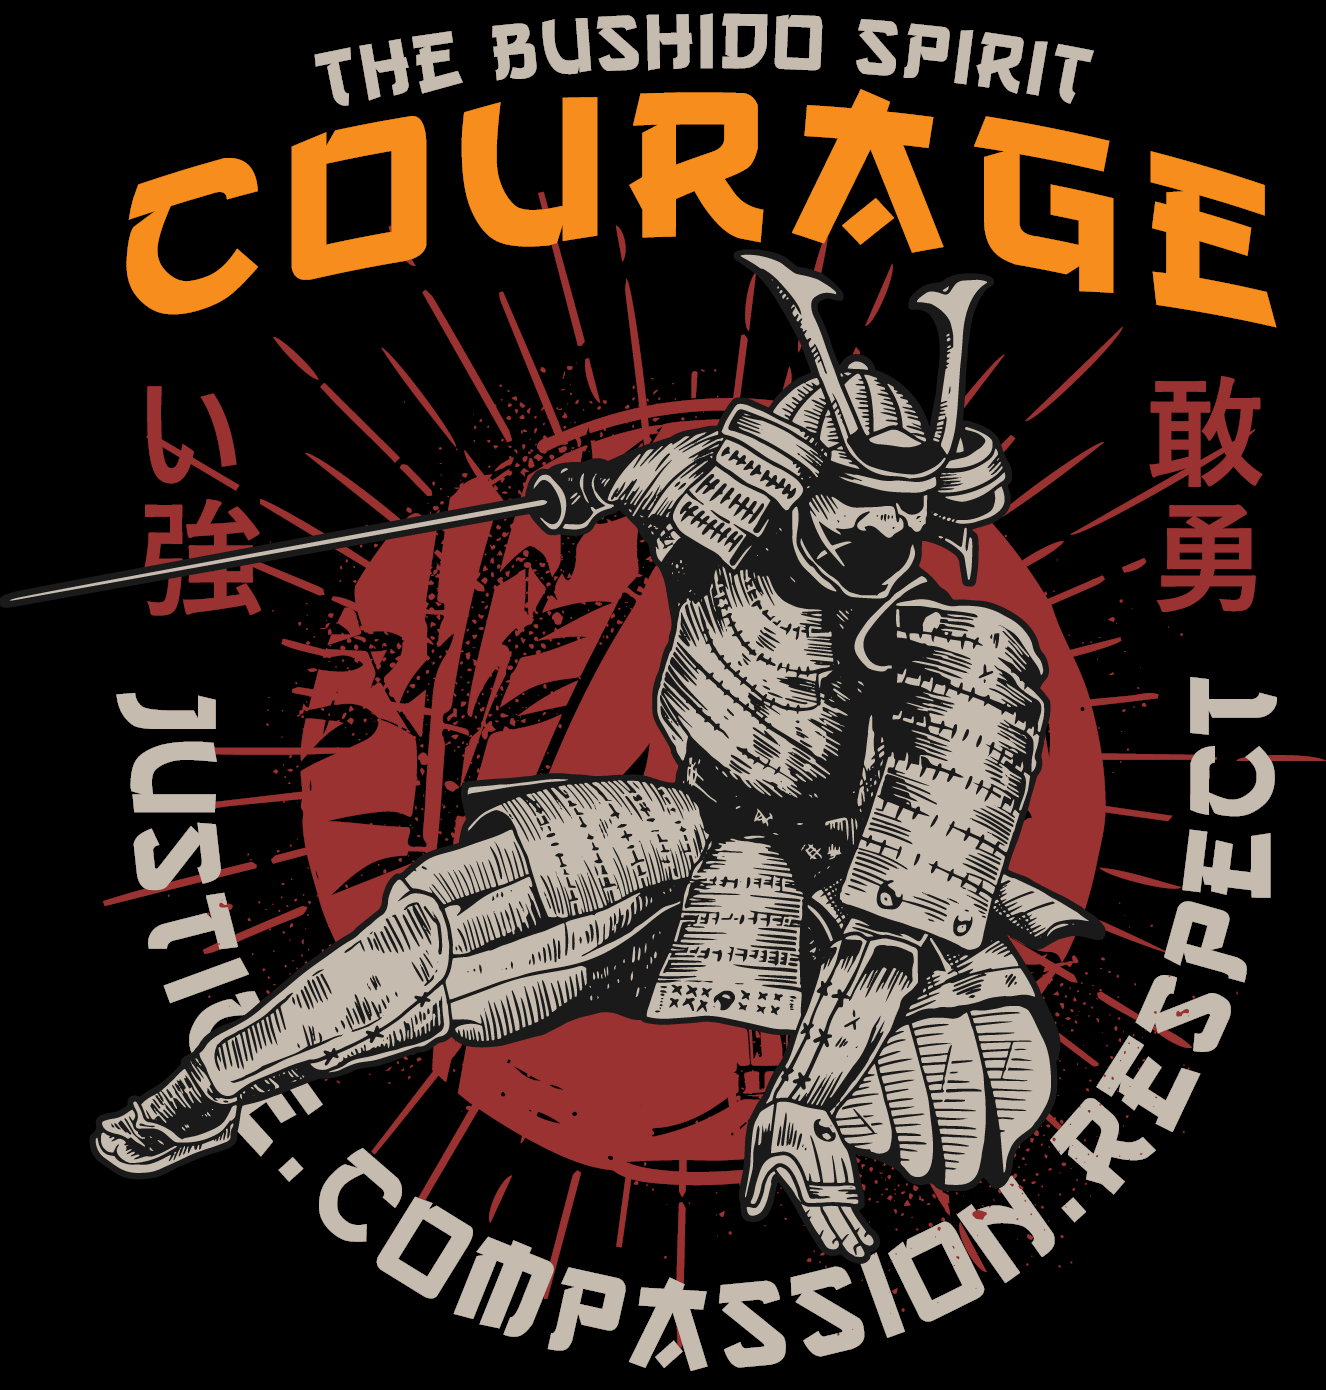 The Bushido Code Courage